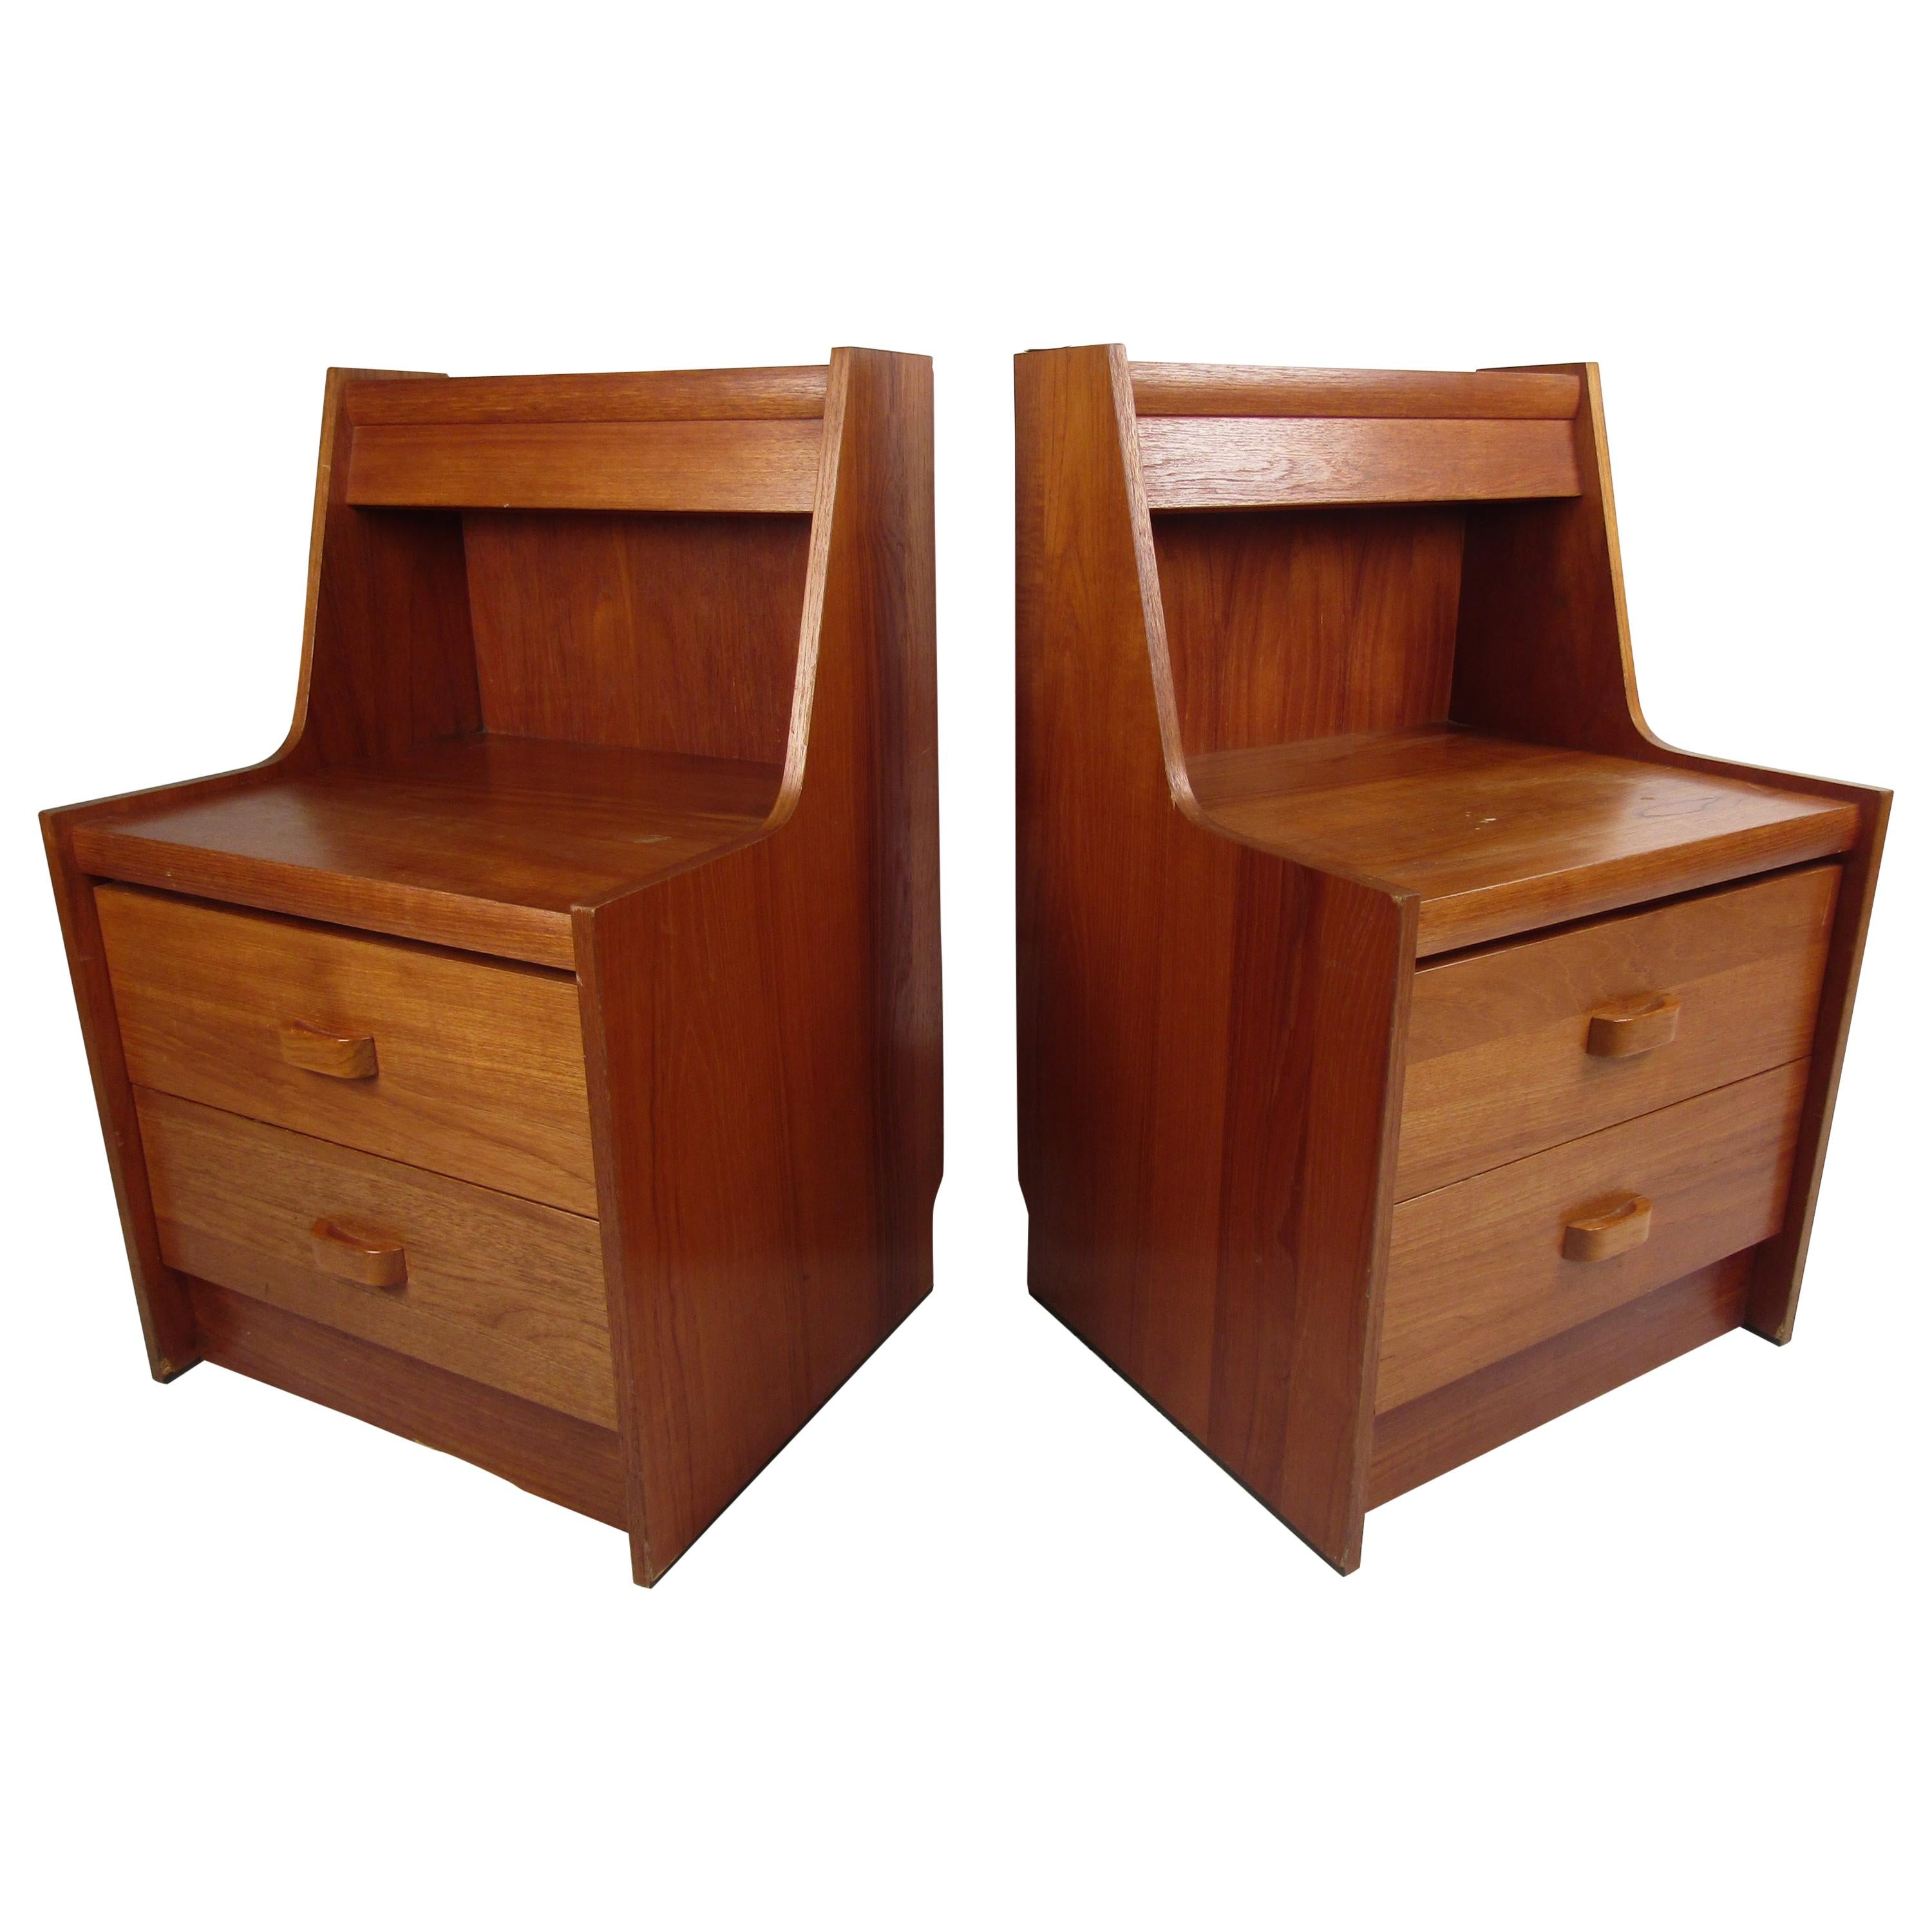 Pair of Teak Midcentury Nightstands by R.S. Furniture Inc.